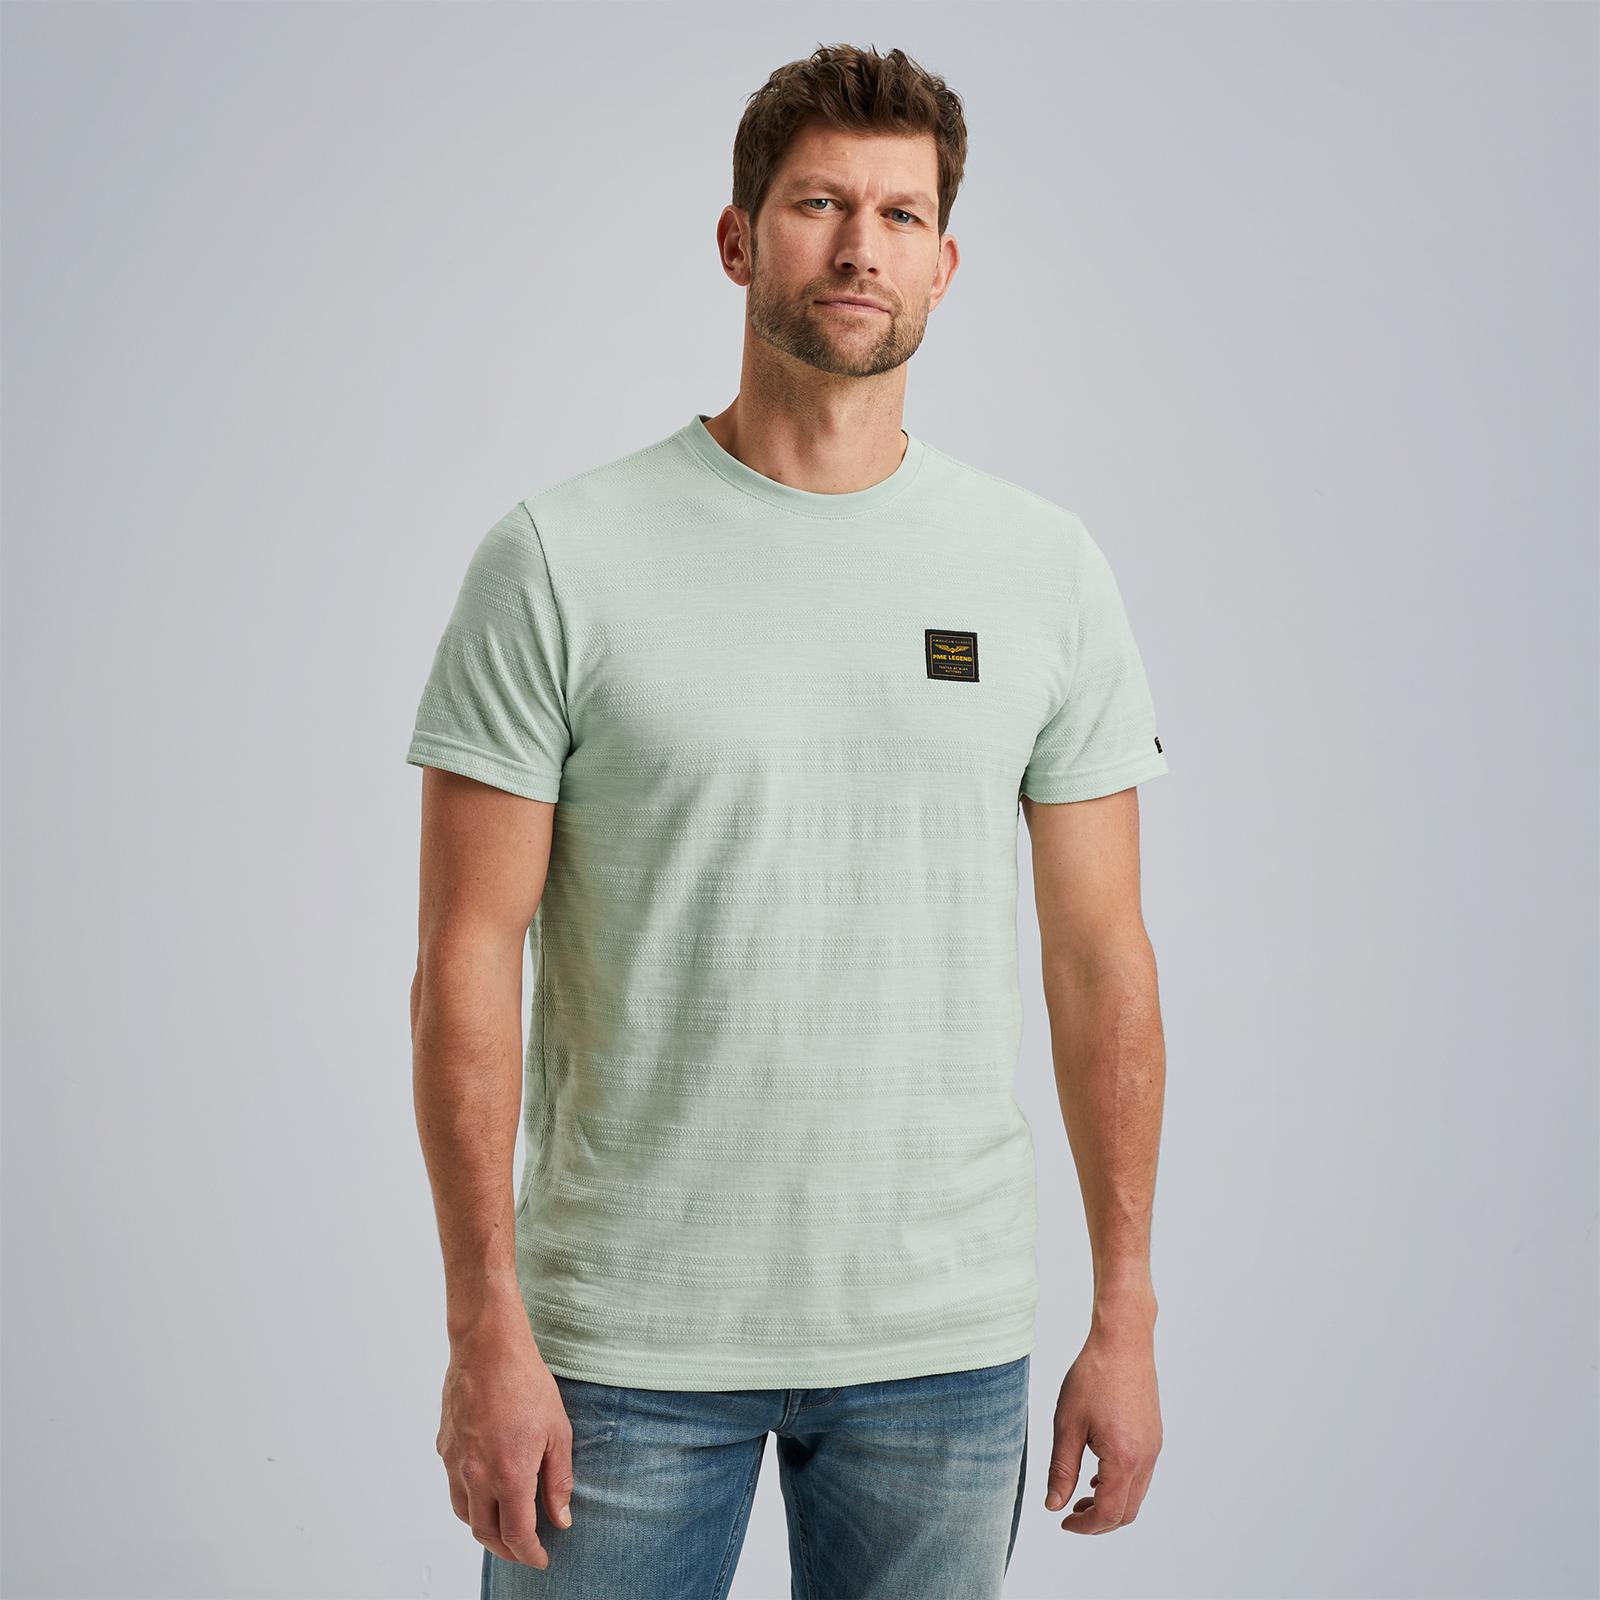 PME Legend T-shirt met ingebreid patroon lichtgroen